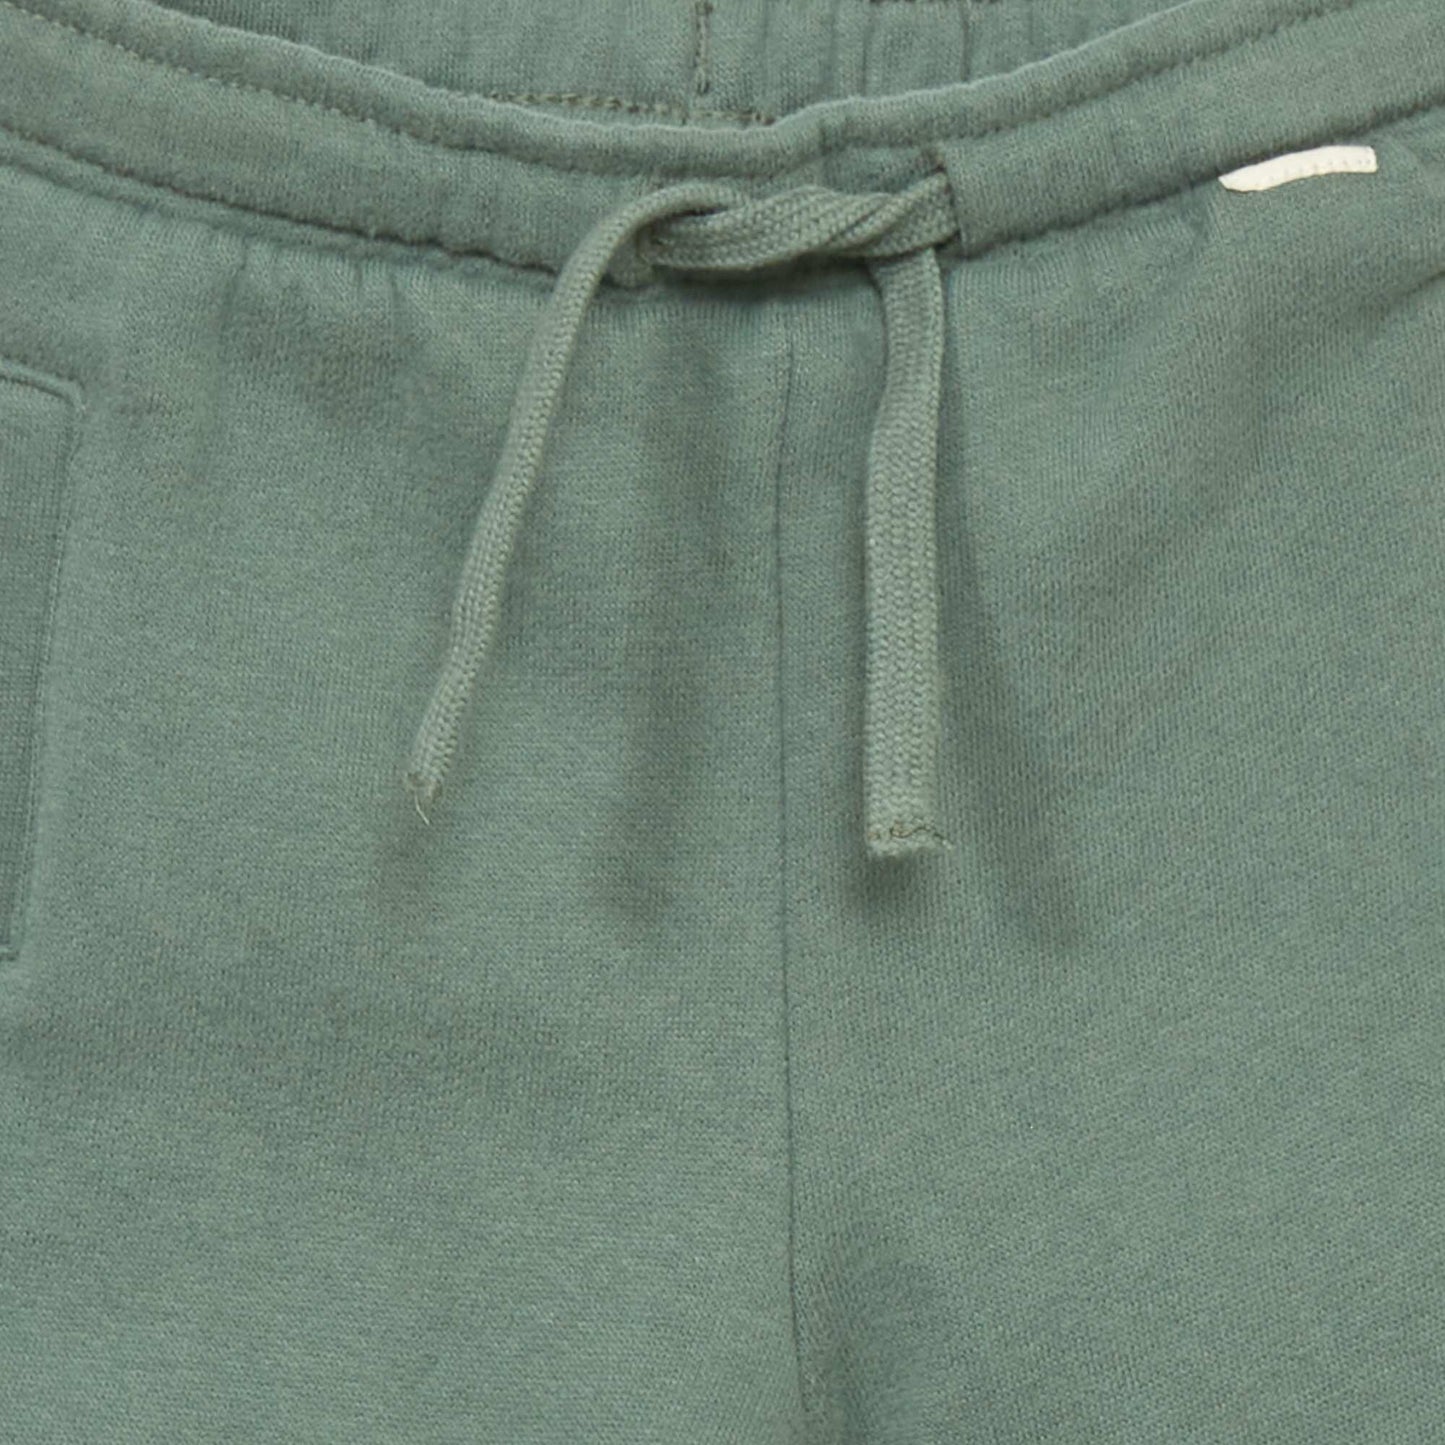 Sweatshirt fabric joggers grey green